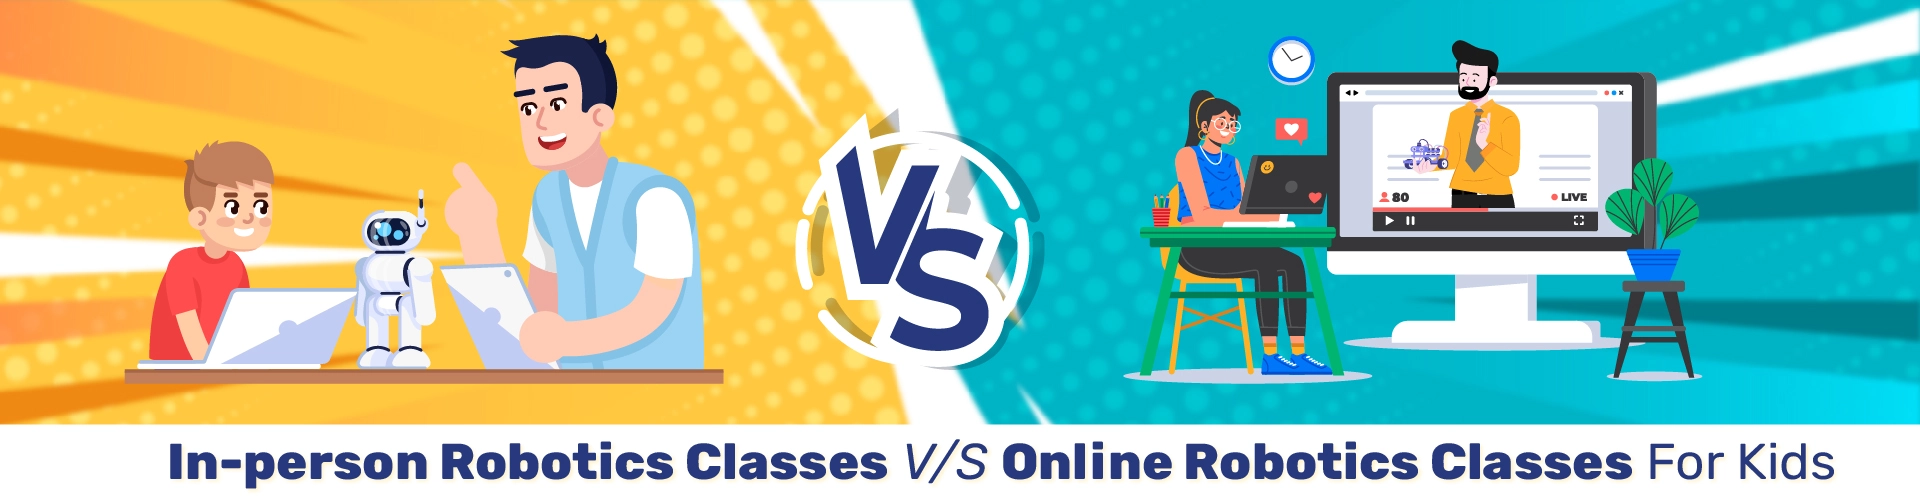 In-person Robotics Classes v/s Online Robotics Classes for Kids